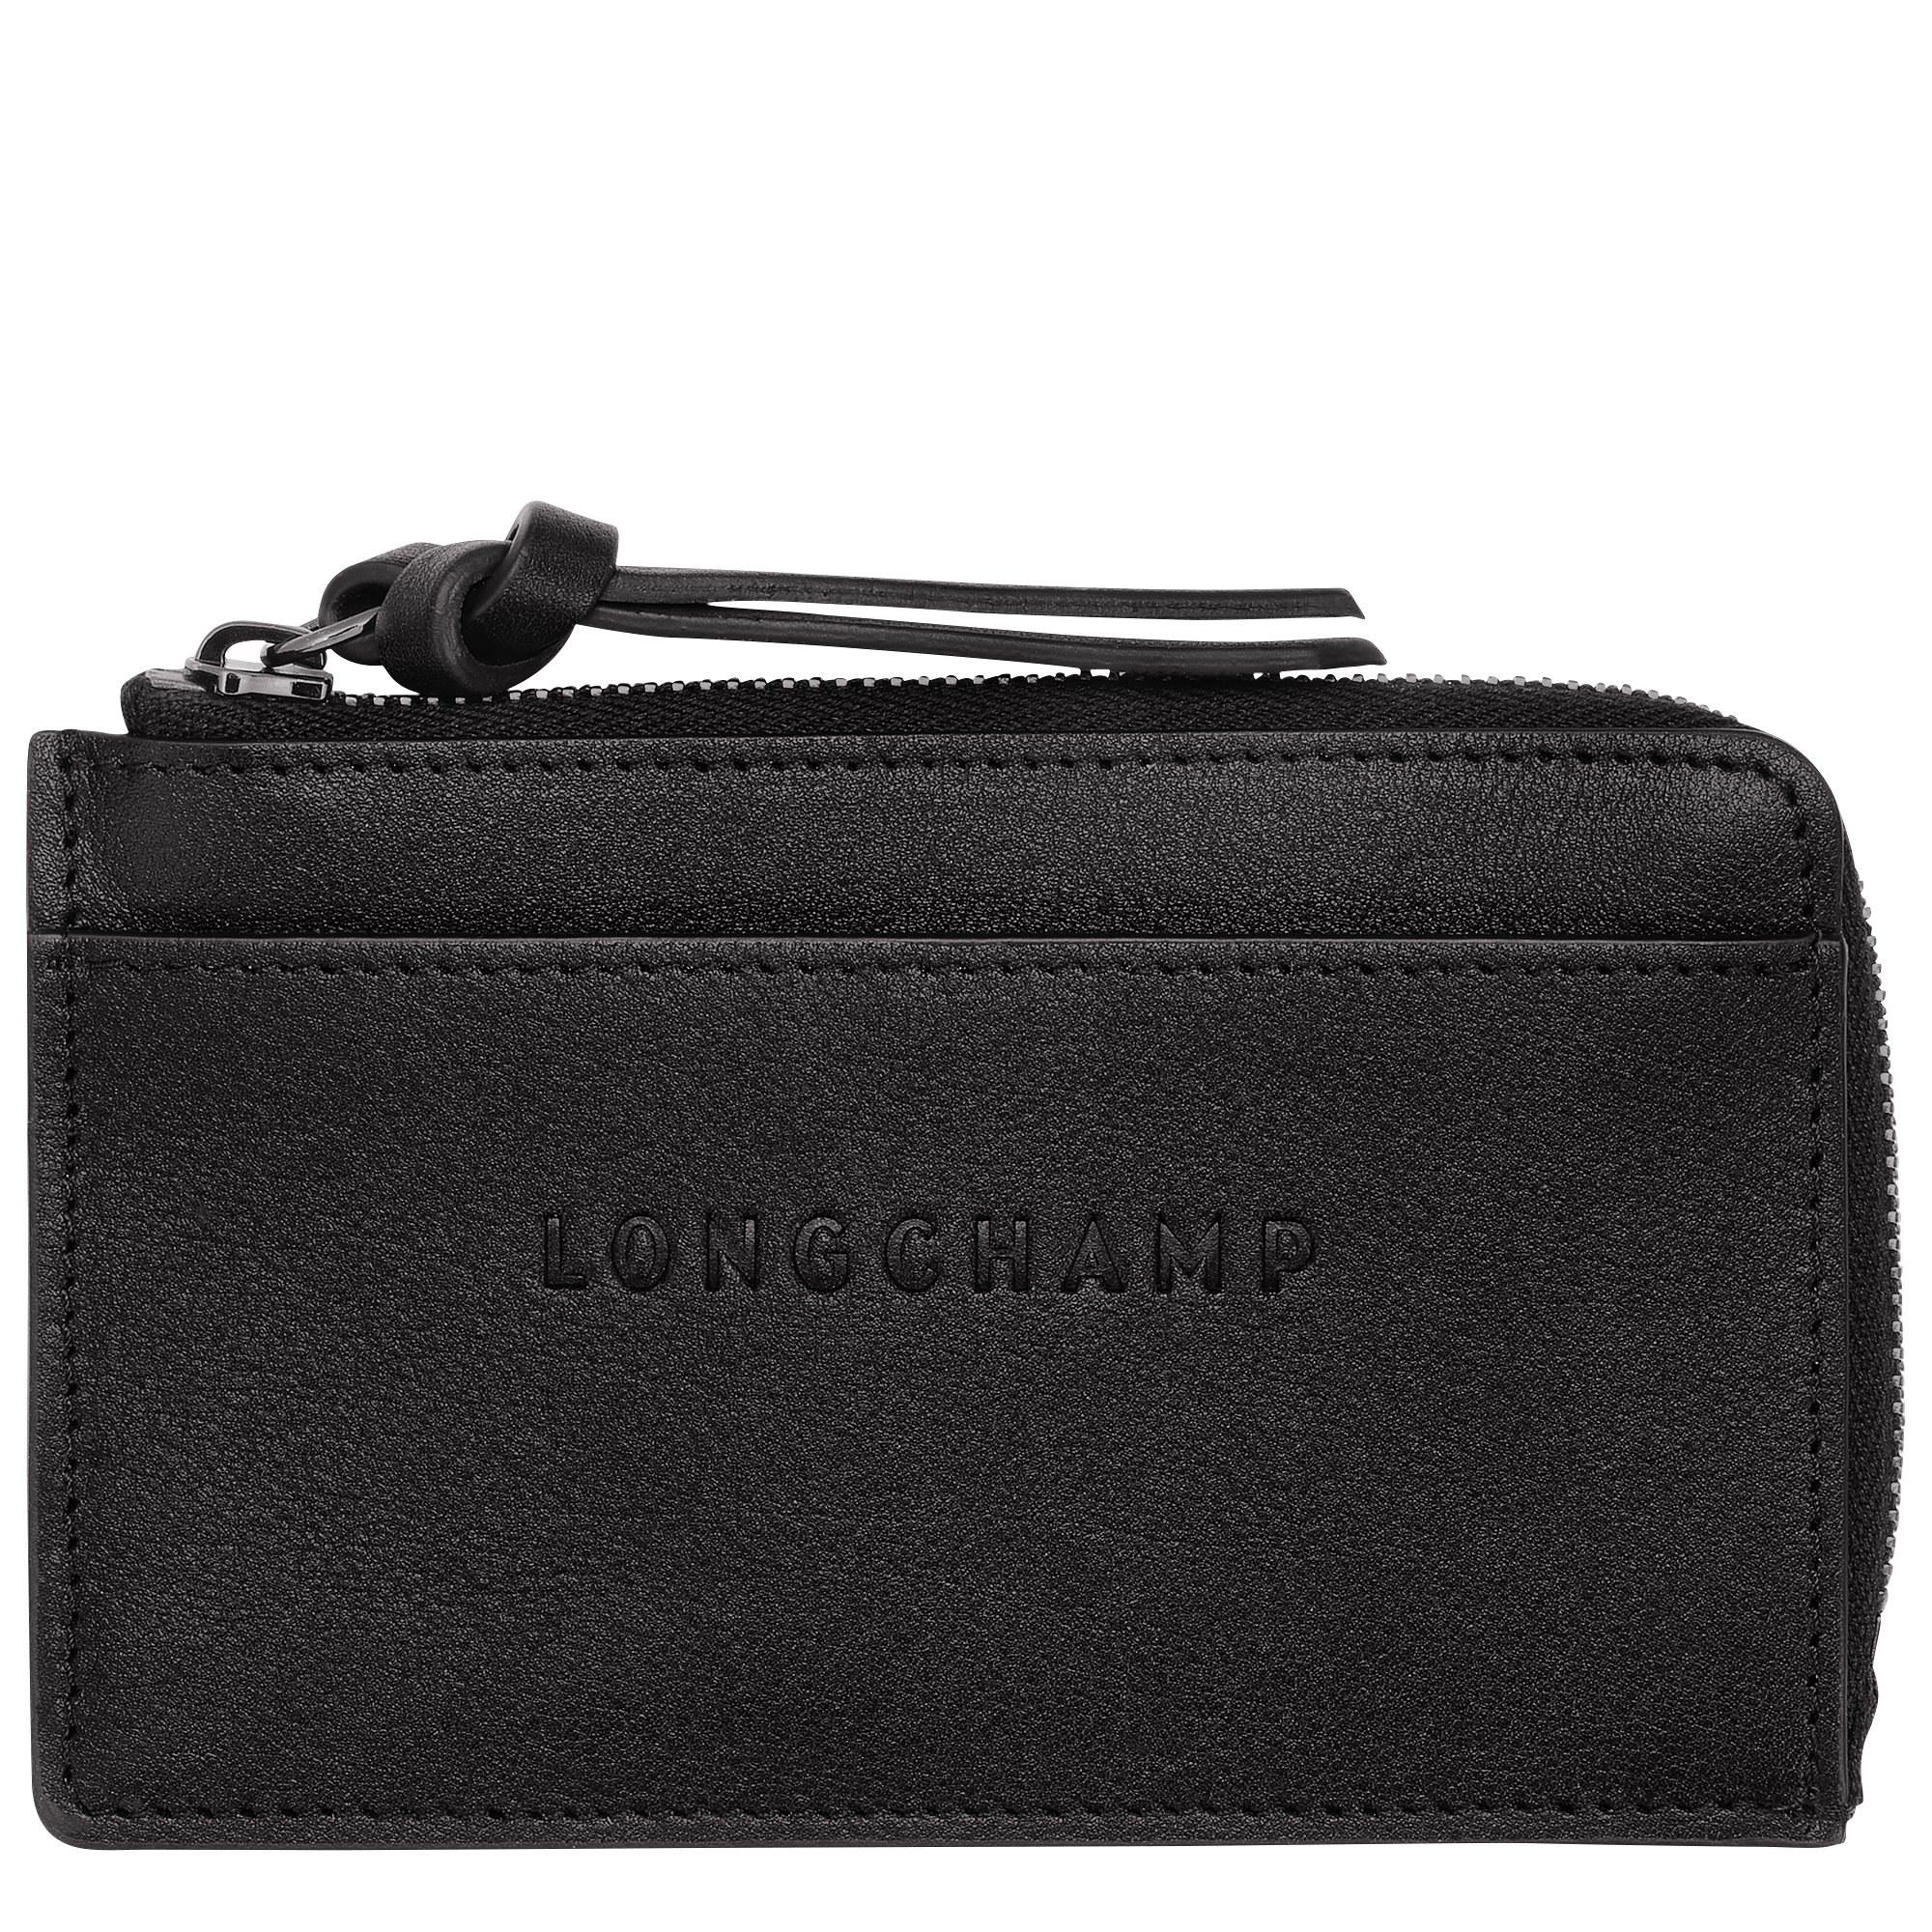 Longchamp 3D 系列 卡片夾, 黑色